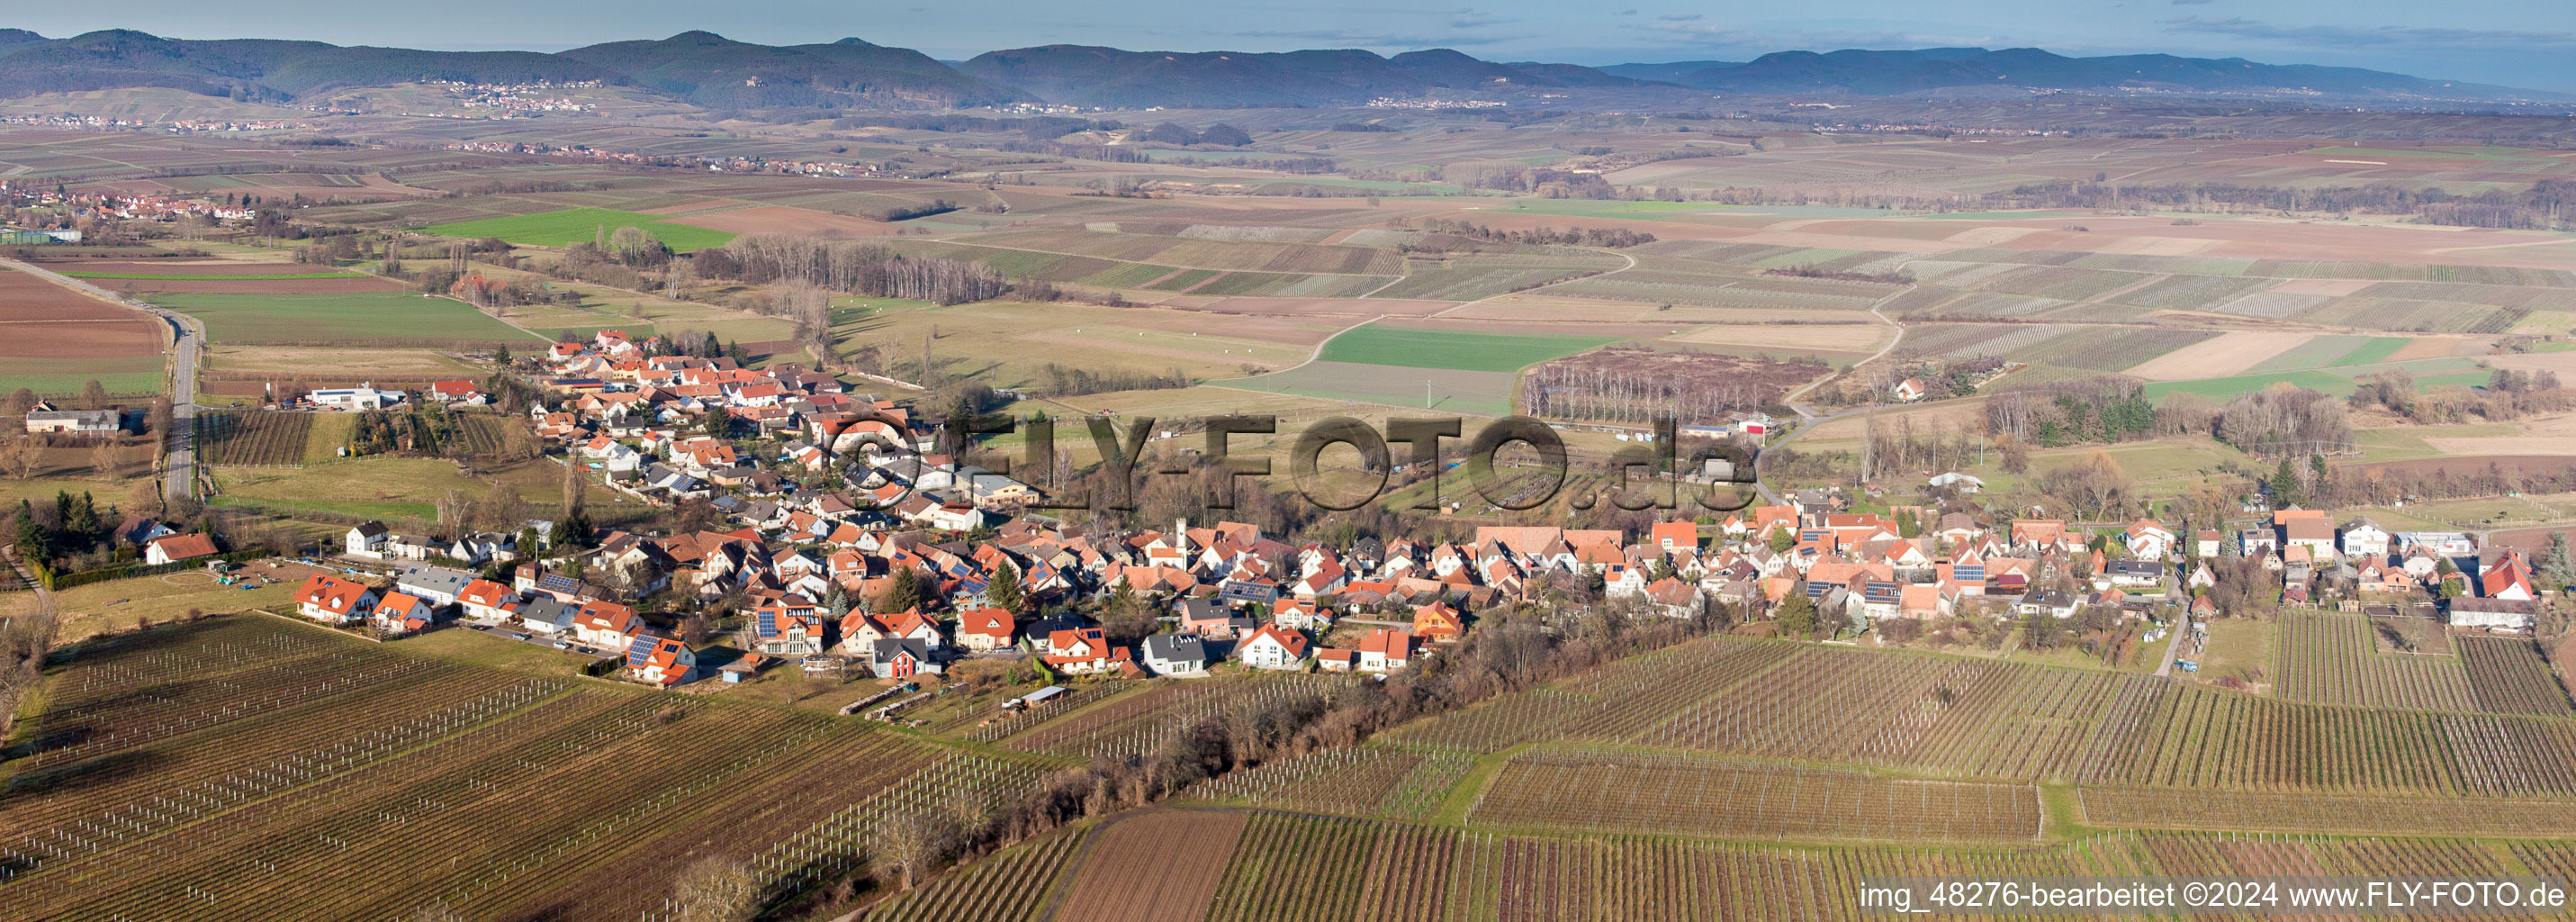 Vue aérienne de Panorama - champs agricoles et terres agricoles en perspective à Oberhausen dans le département Rhénanie-Palatinat, Allemagne